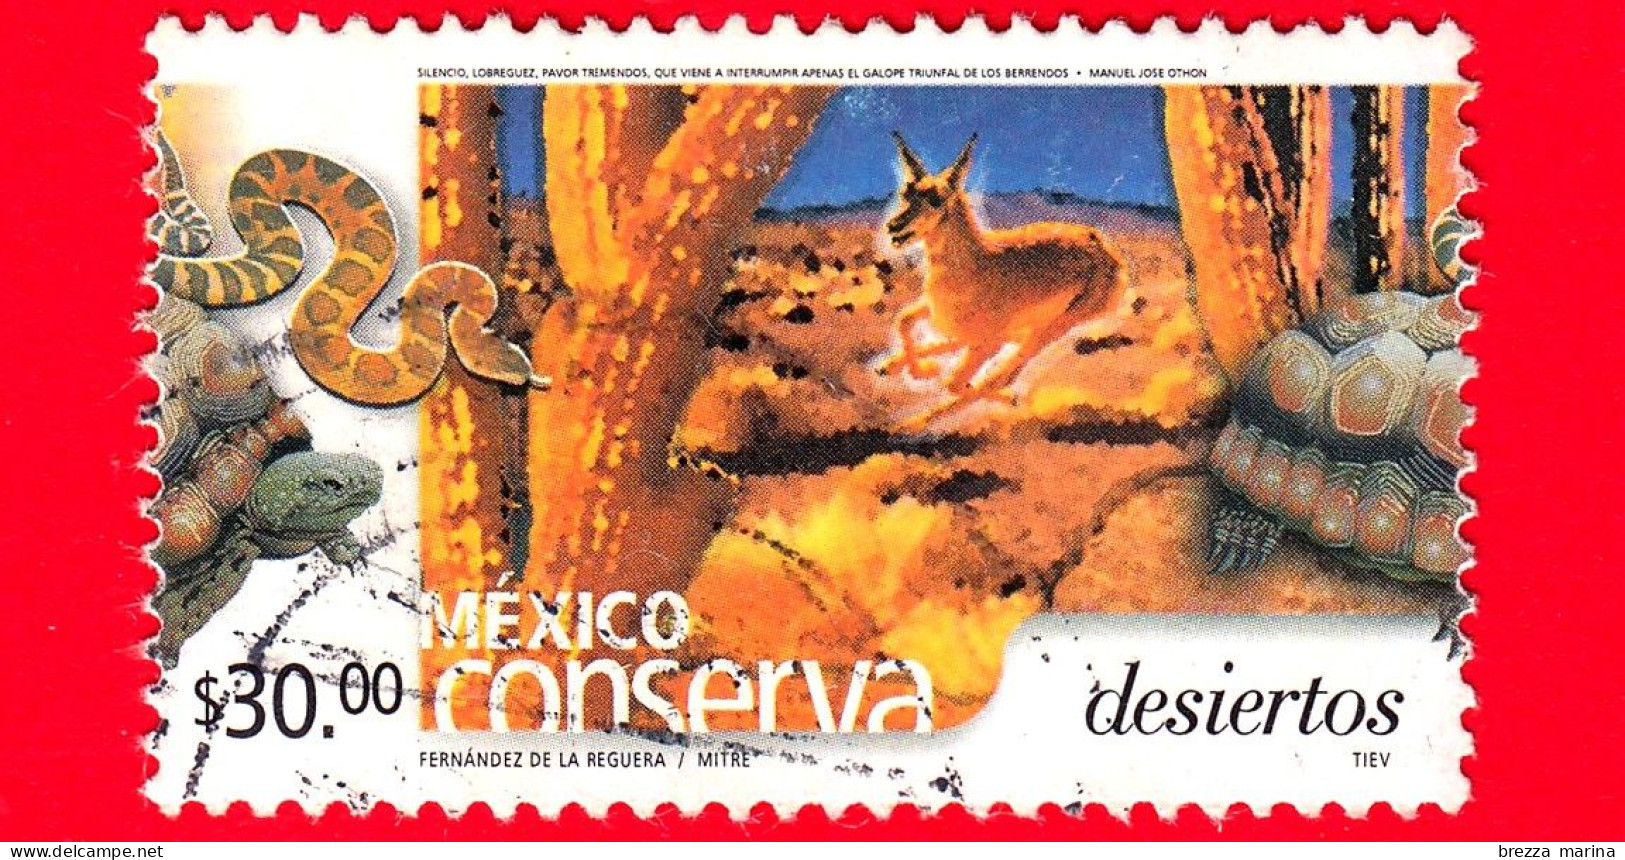 MESSICO -  Usato - 2004 - Mexico Conserva - Conservazione Del Messico - Deserti - Desiertos - 30.00 - México